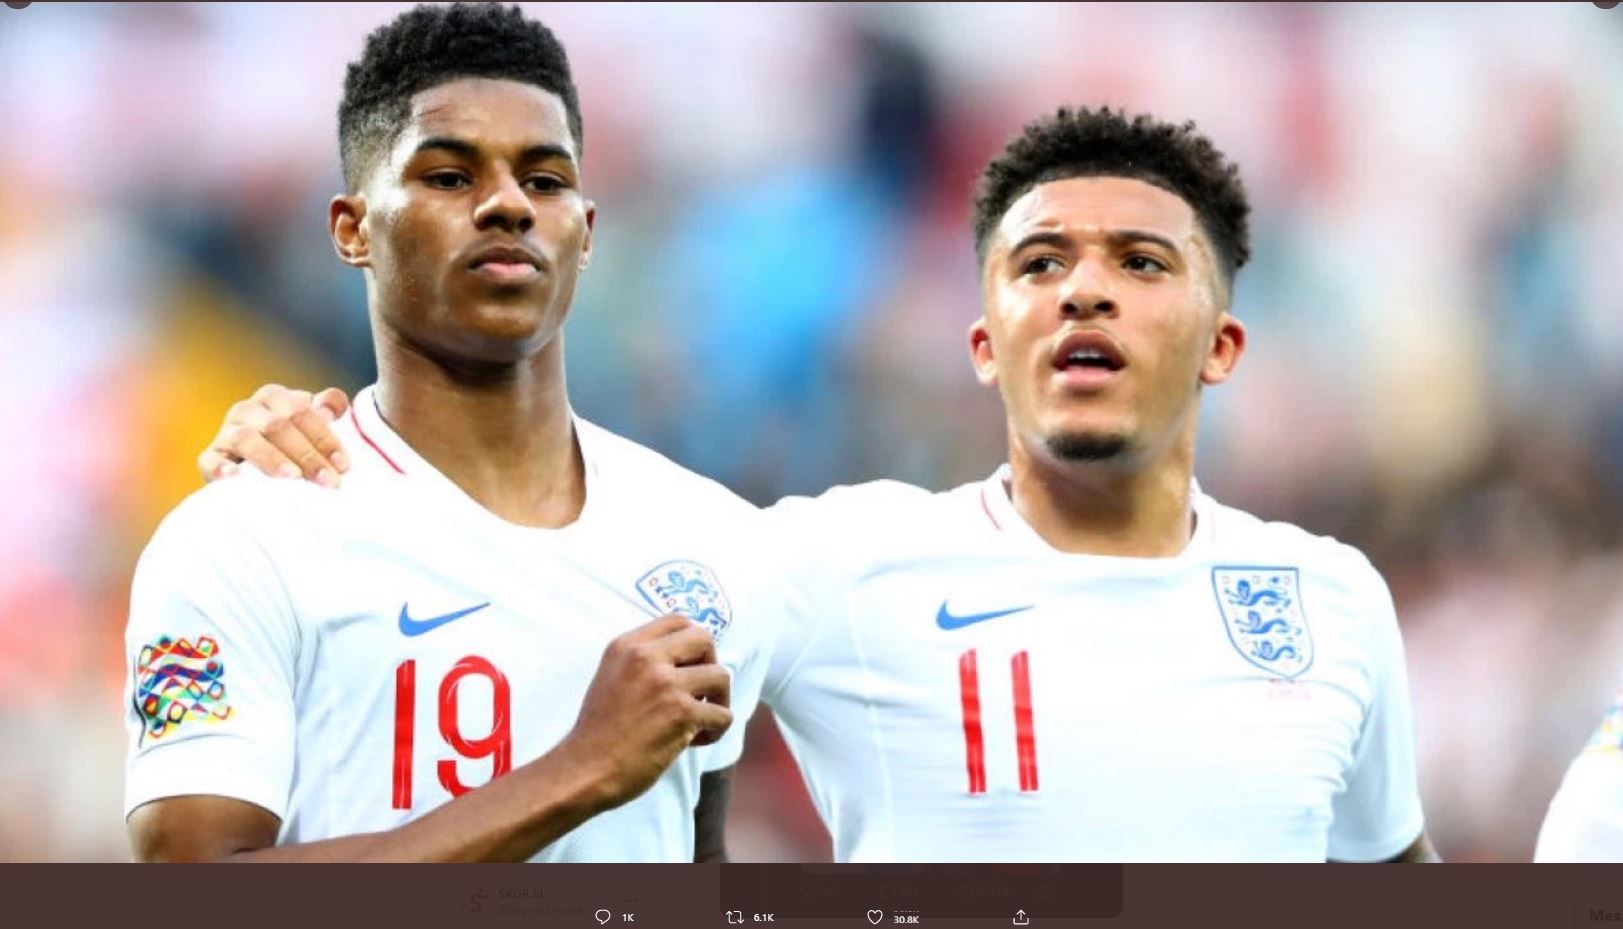 Bintang timnas Inggris, Marcus Rashford, dan Jadon Sancho, mendapat perlakuan rasis di media sosial setelah gagal mengeksekusi penalti di final Euro 2020.